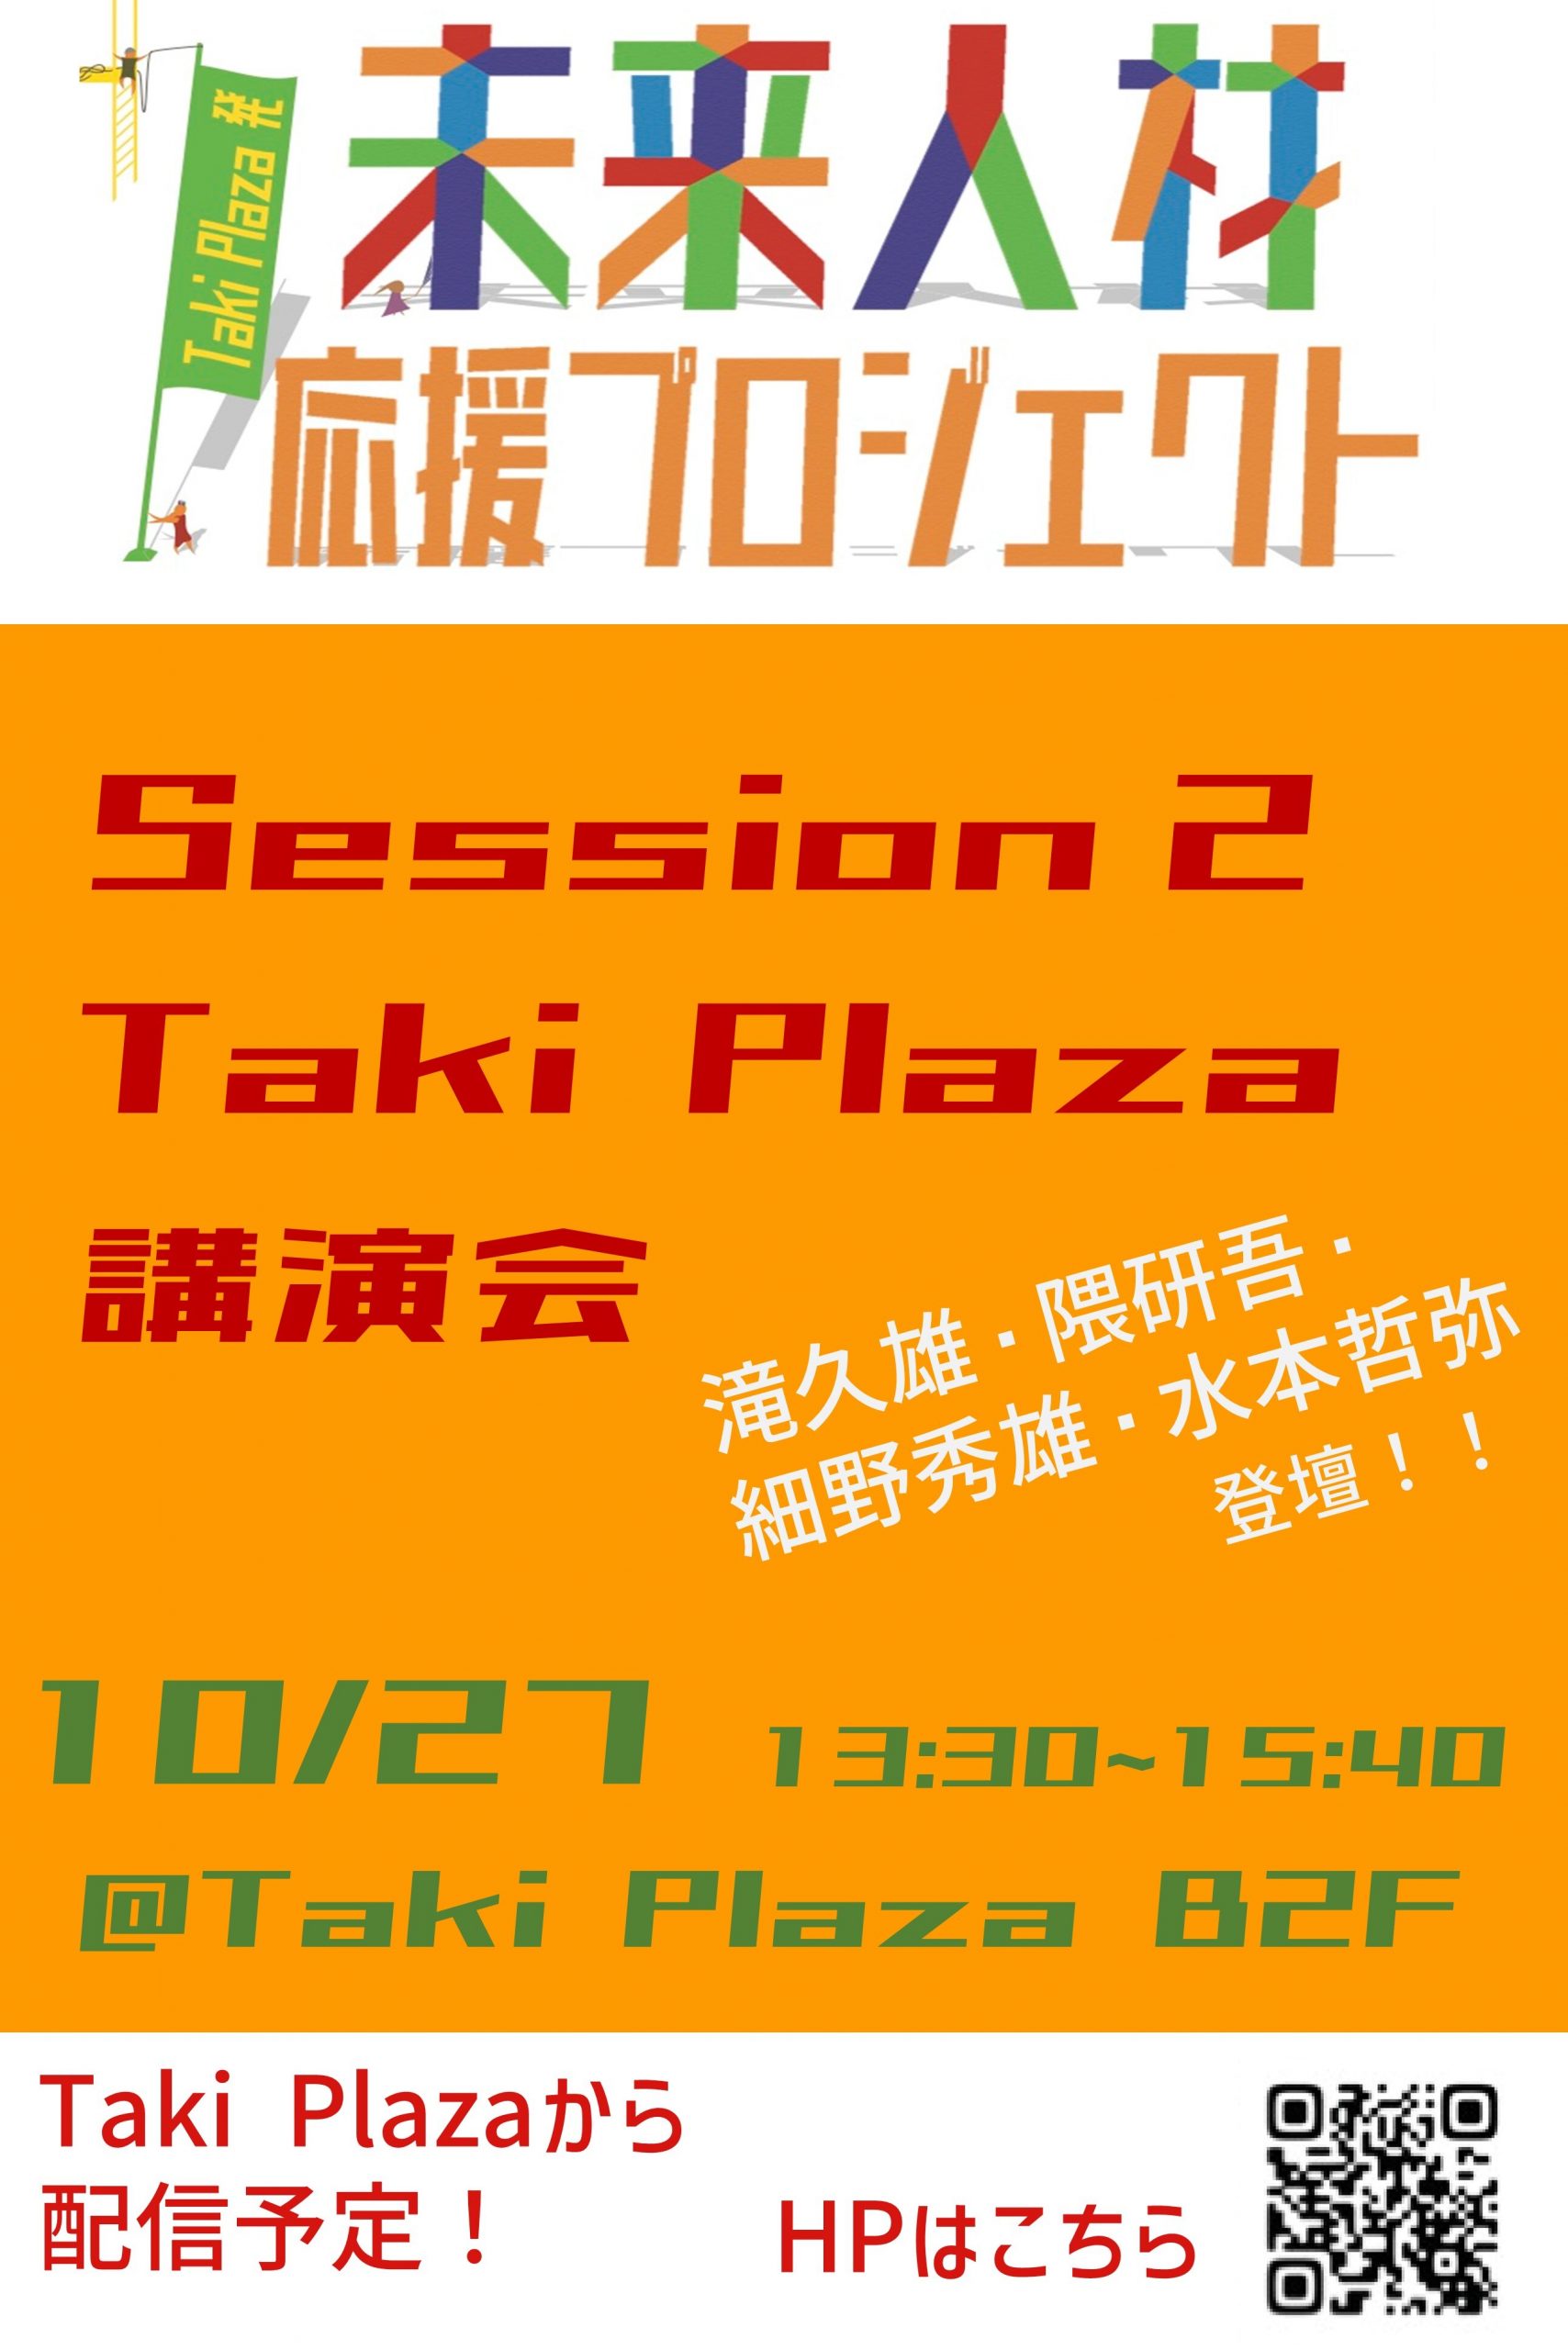 第1回Taki Plaza講演会が実施されました